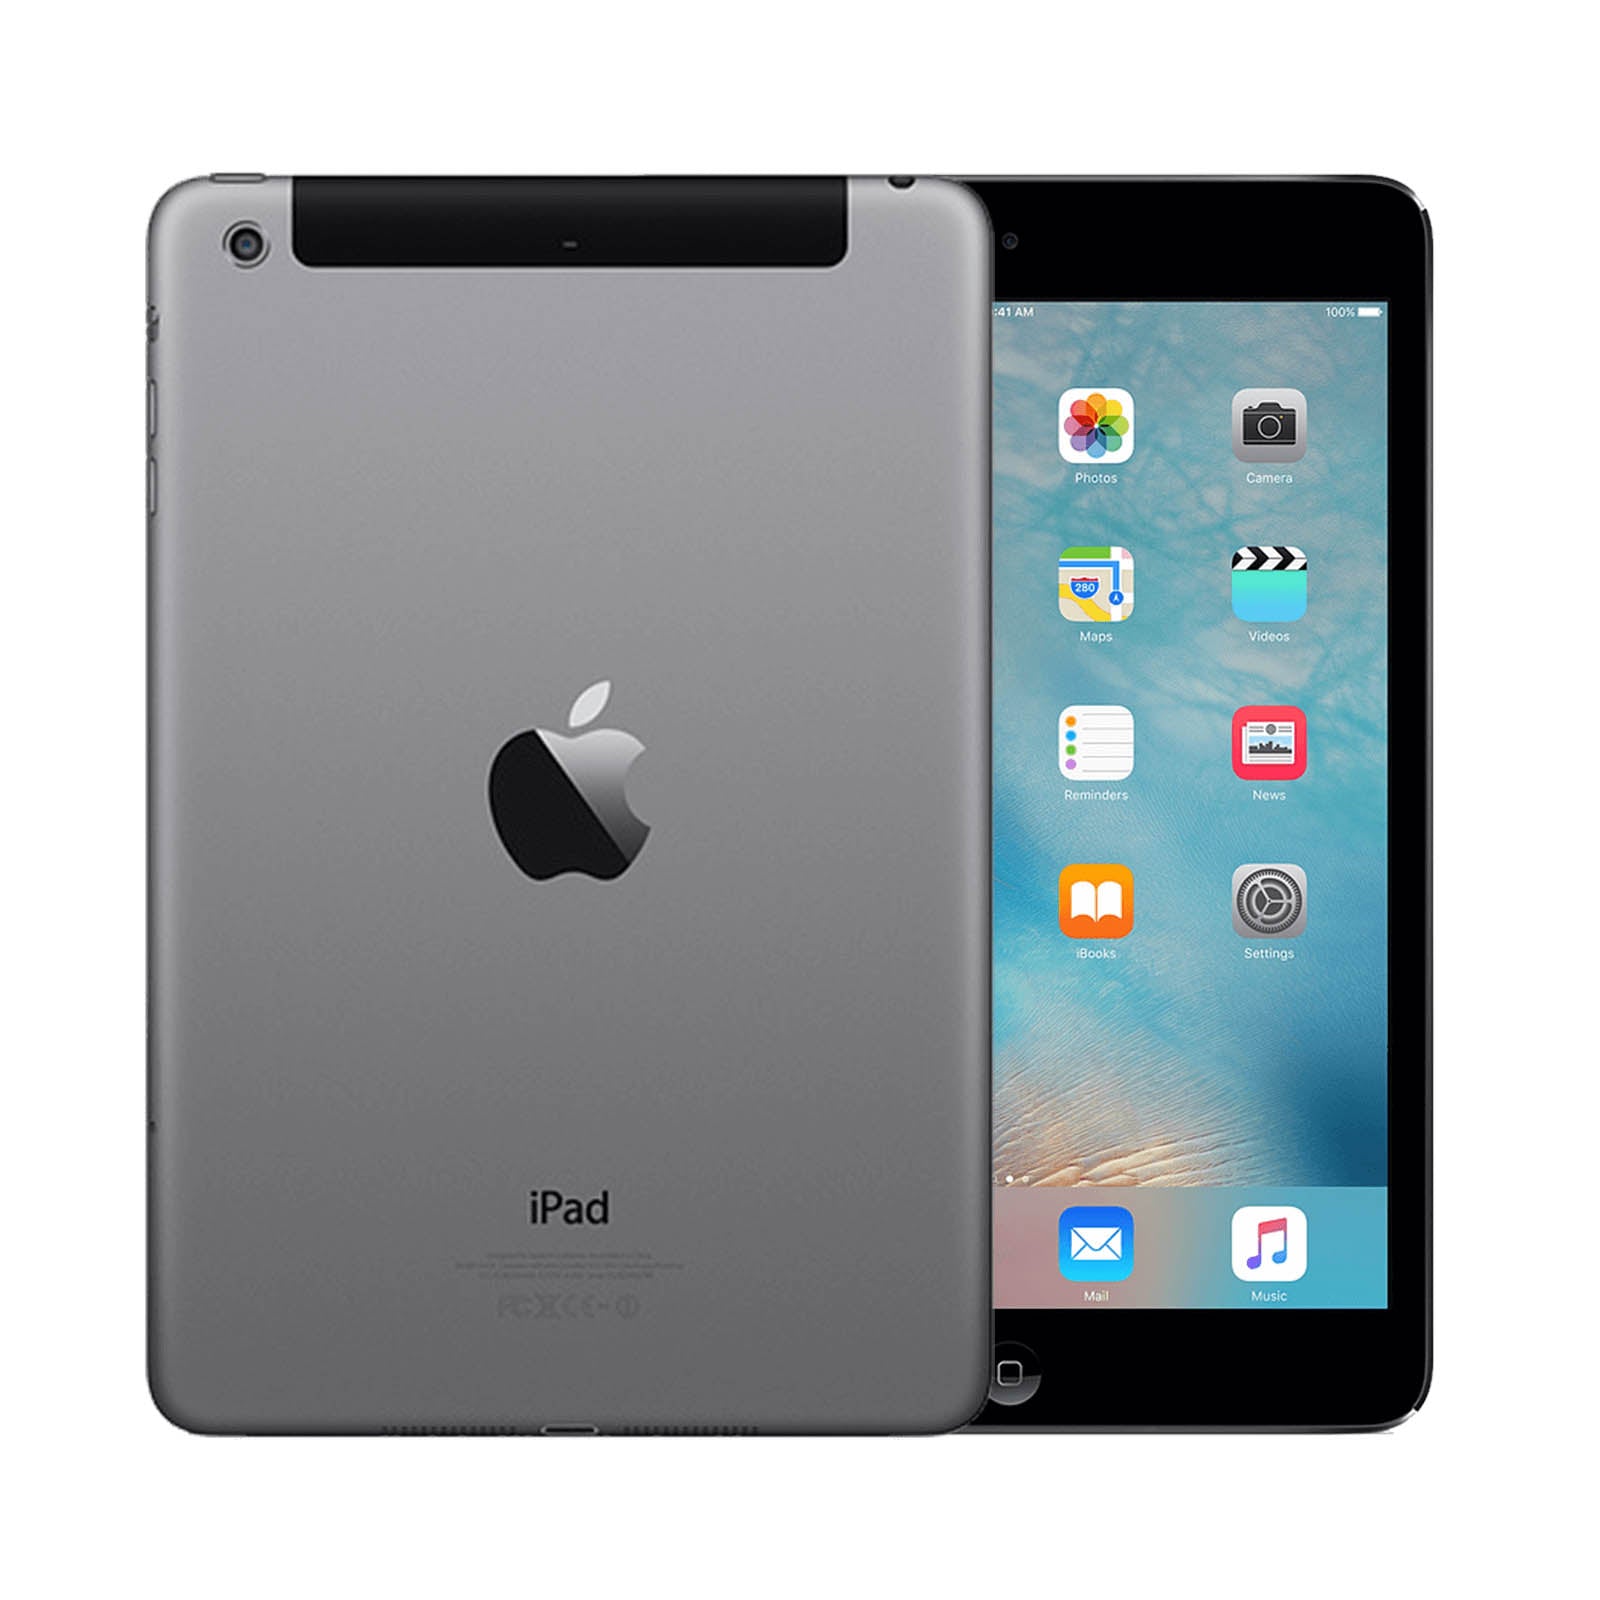 Apple iPad mini 2 64GB Black Fair - Unlocked